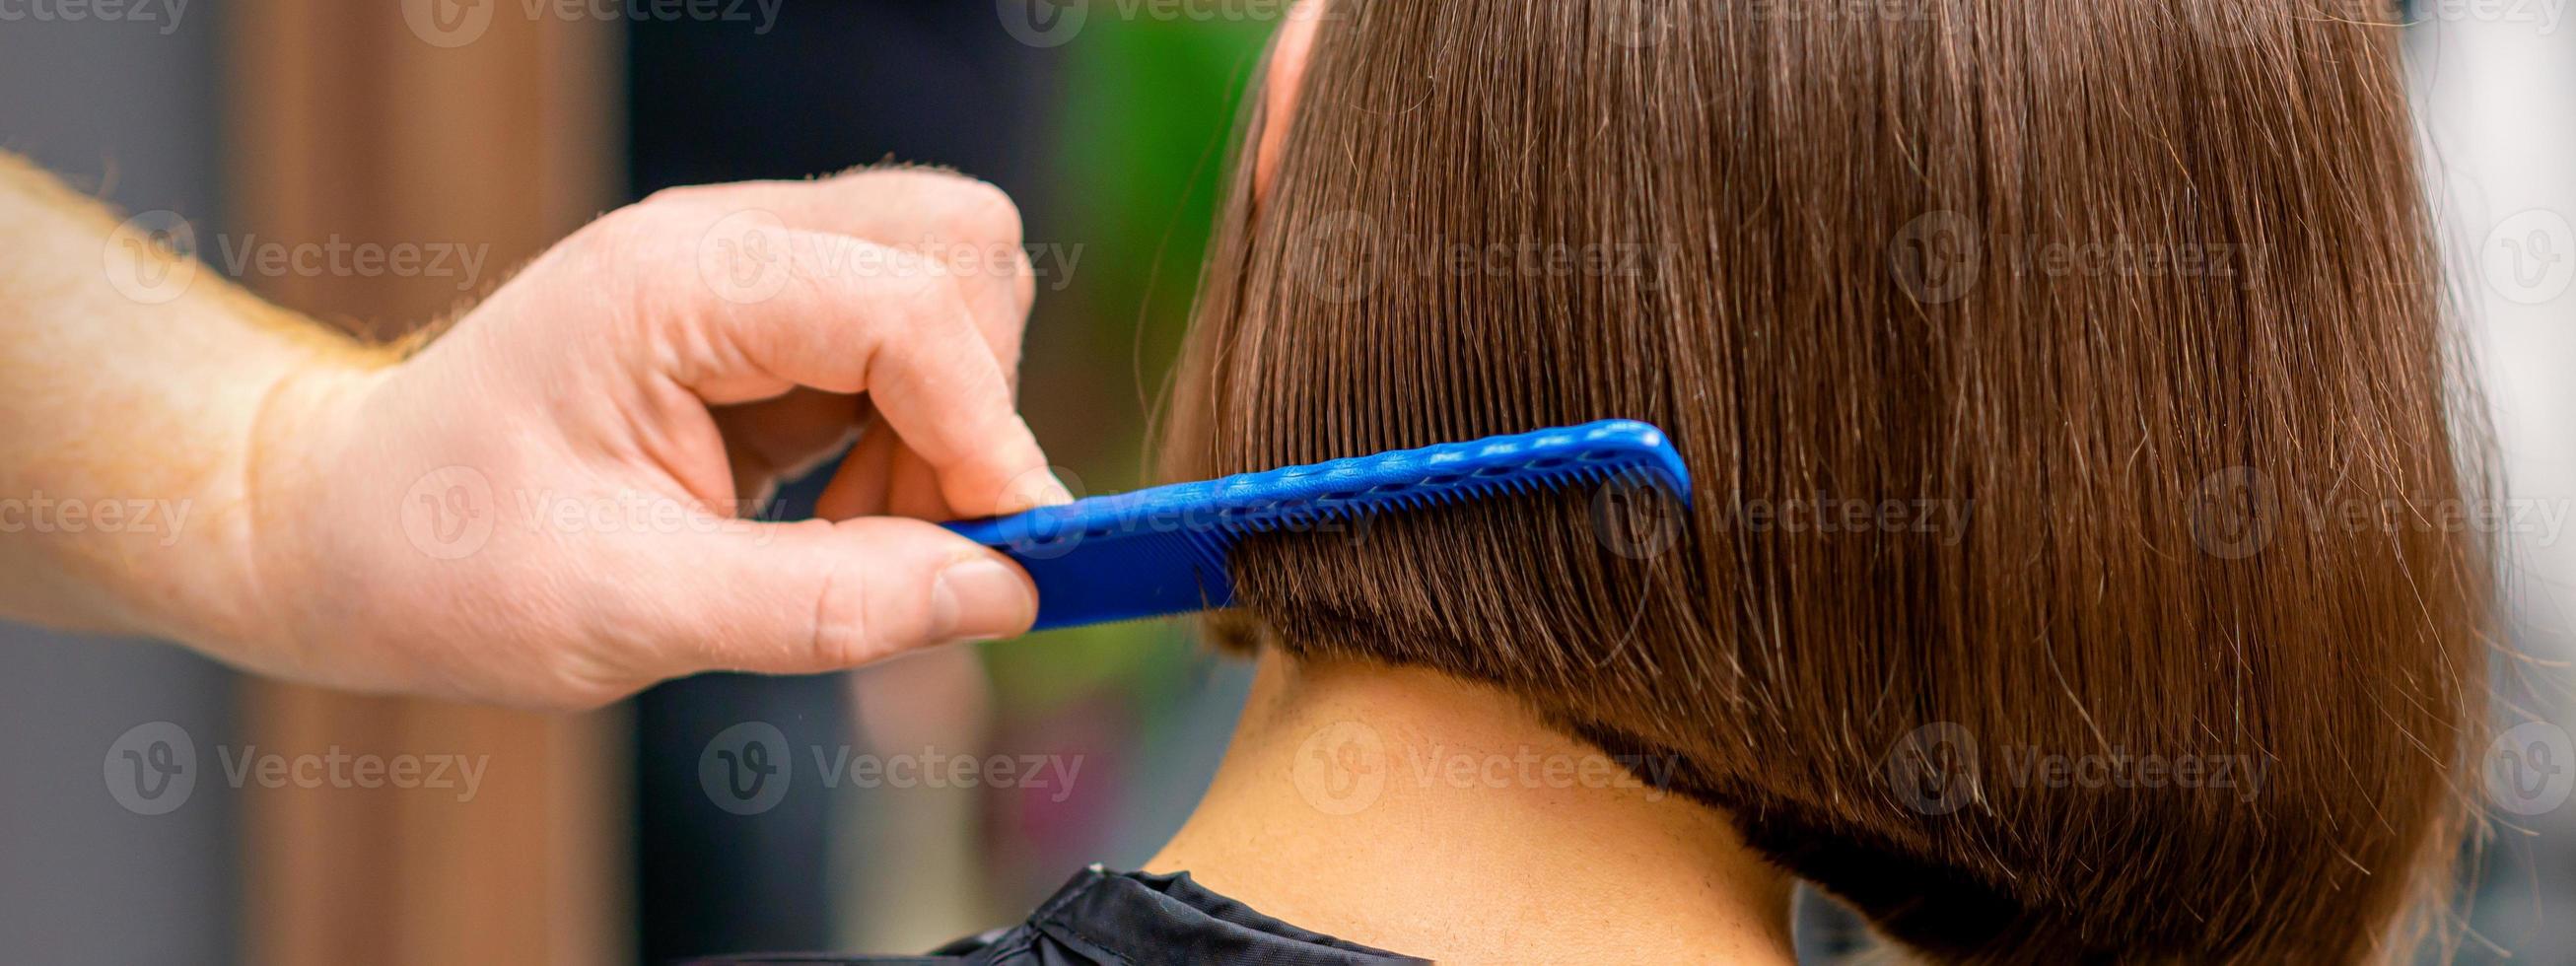 coiffeur ratissage cheveux de femme photo